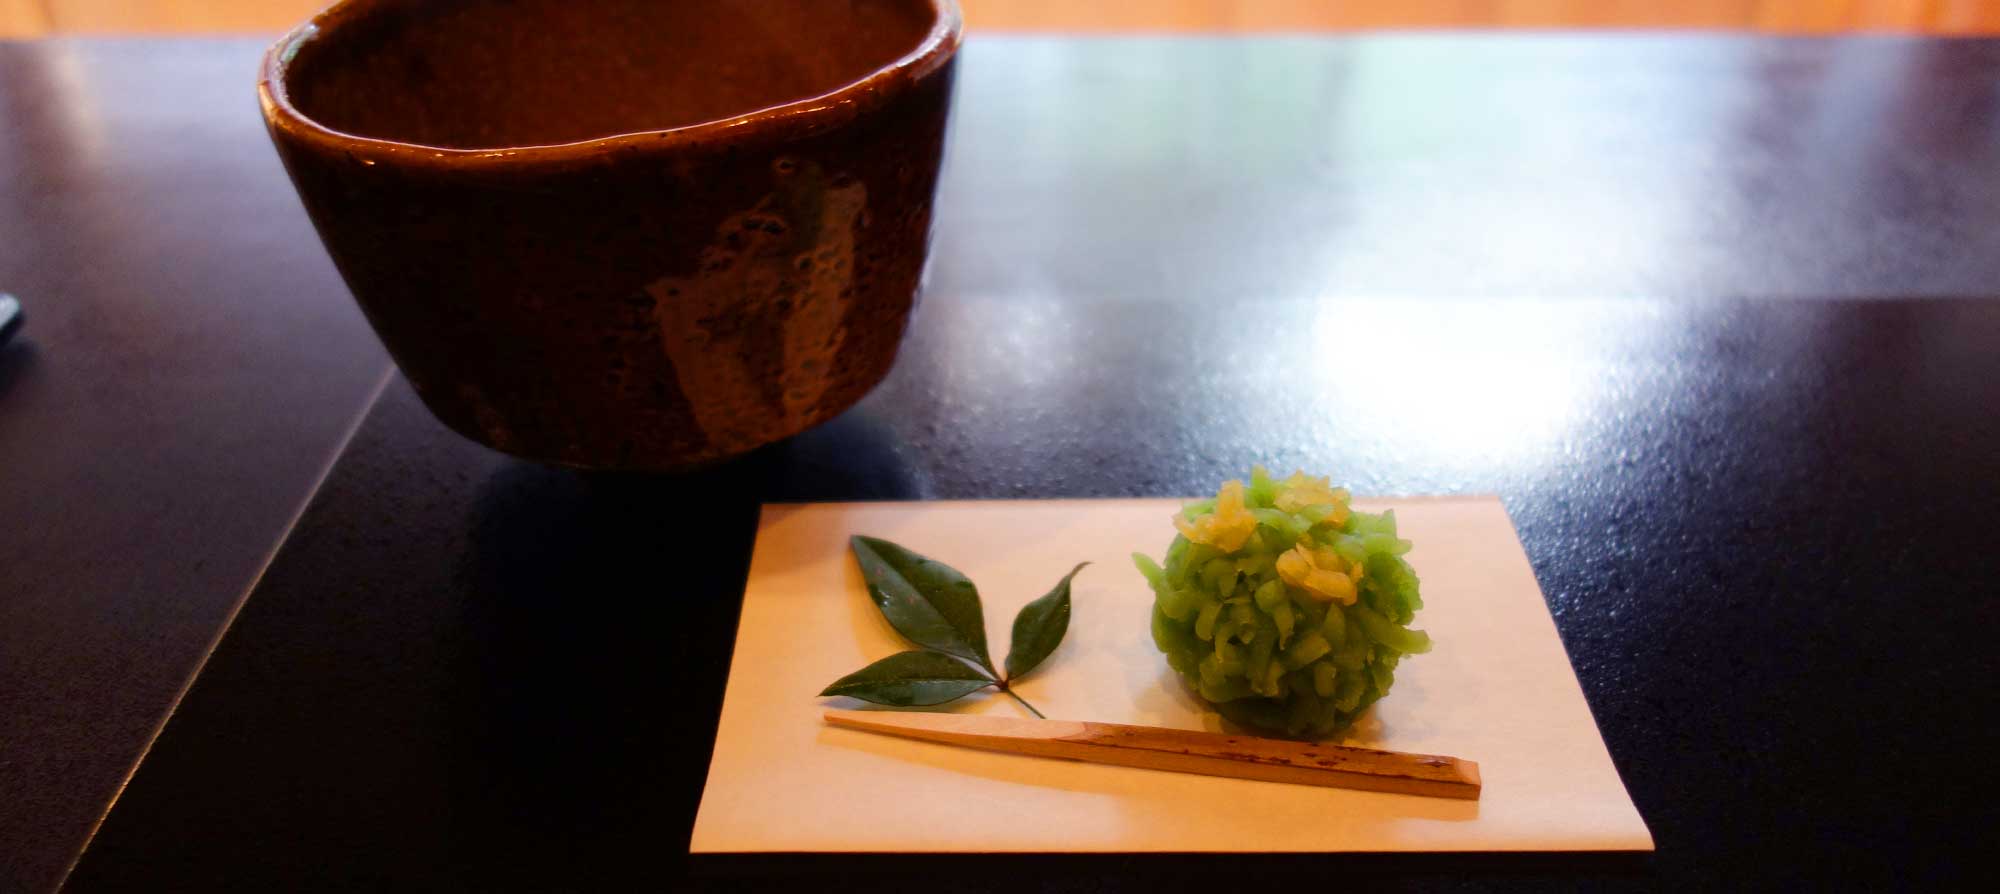 Традиционные японские сладости вагаси под крепкий взбитый порошковый зеленый чай маття